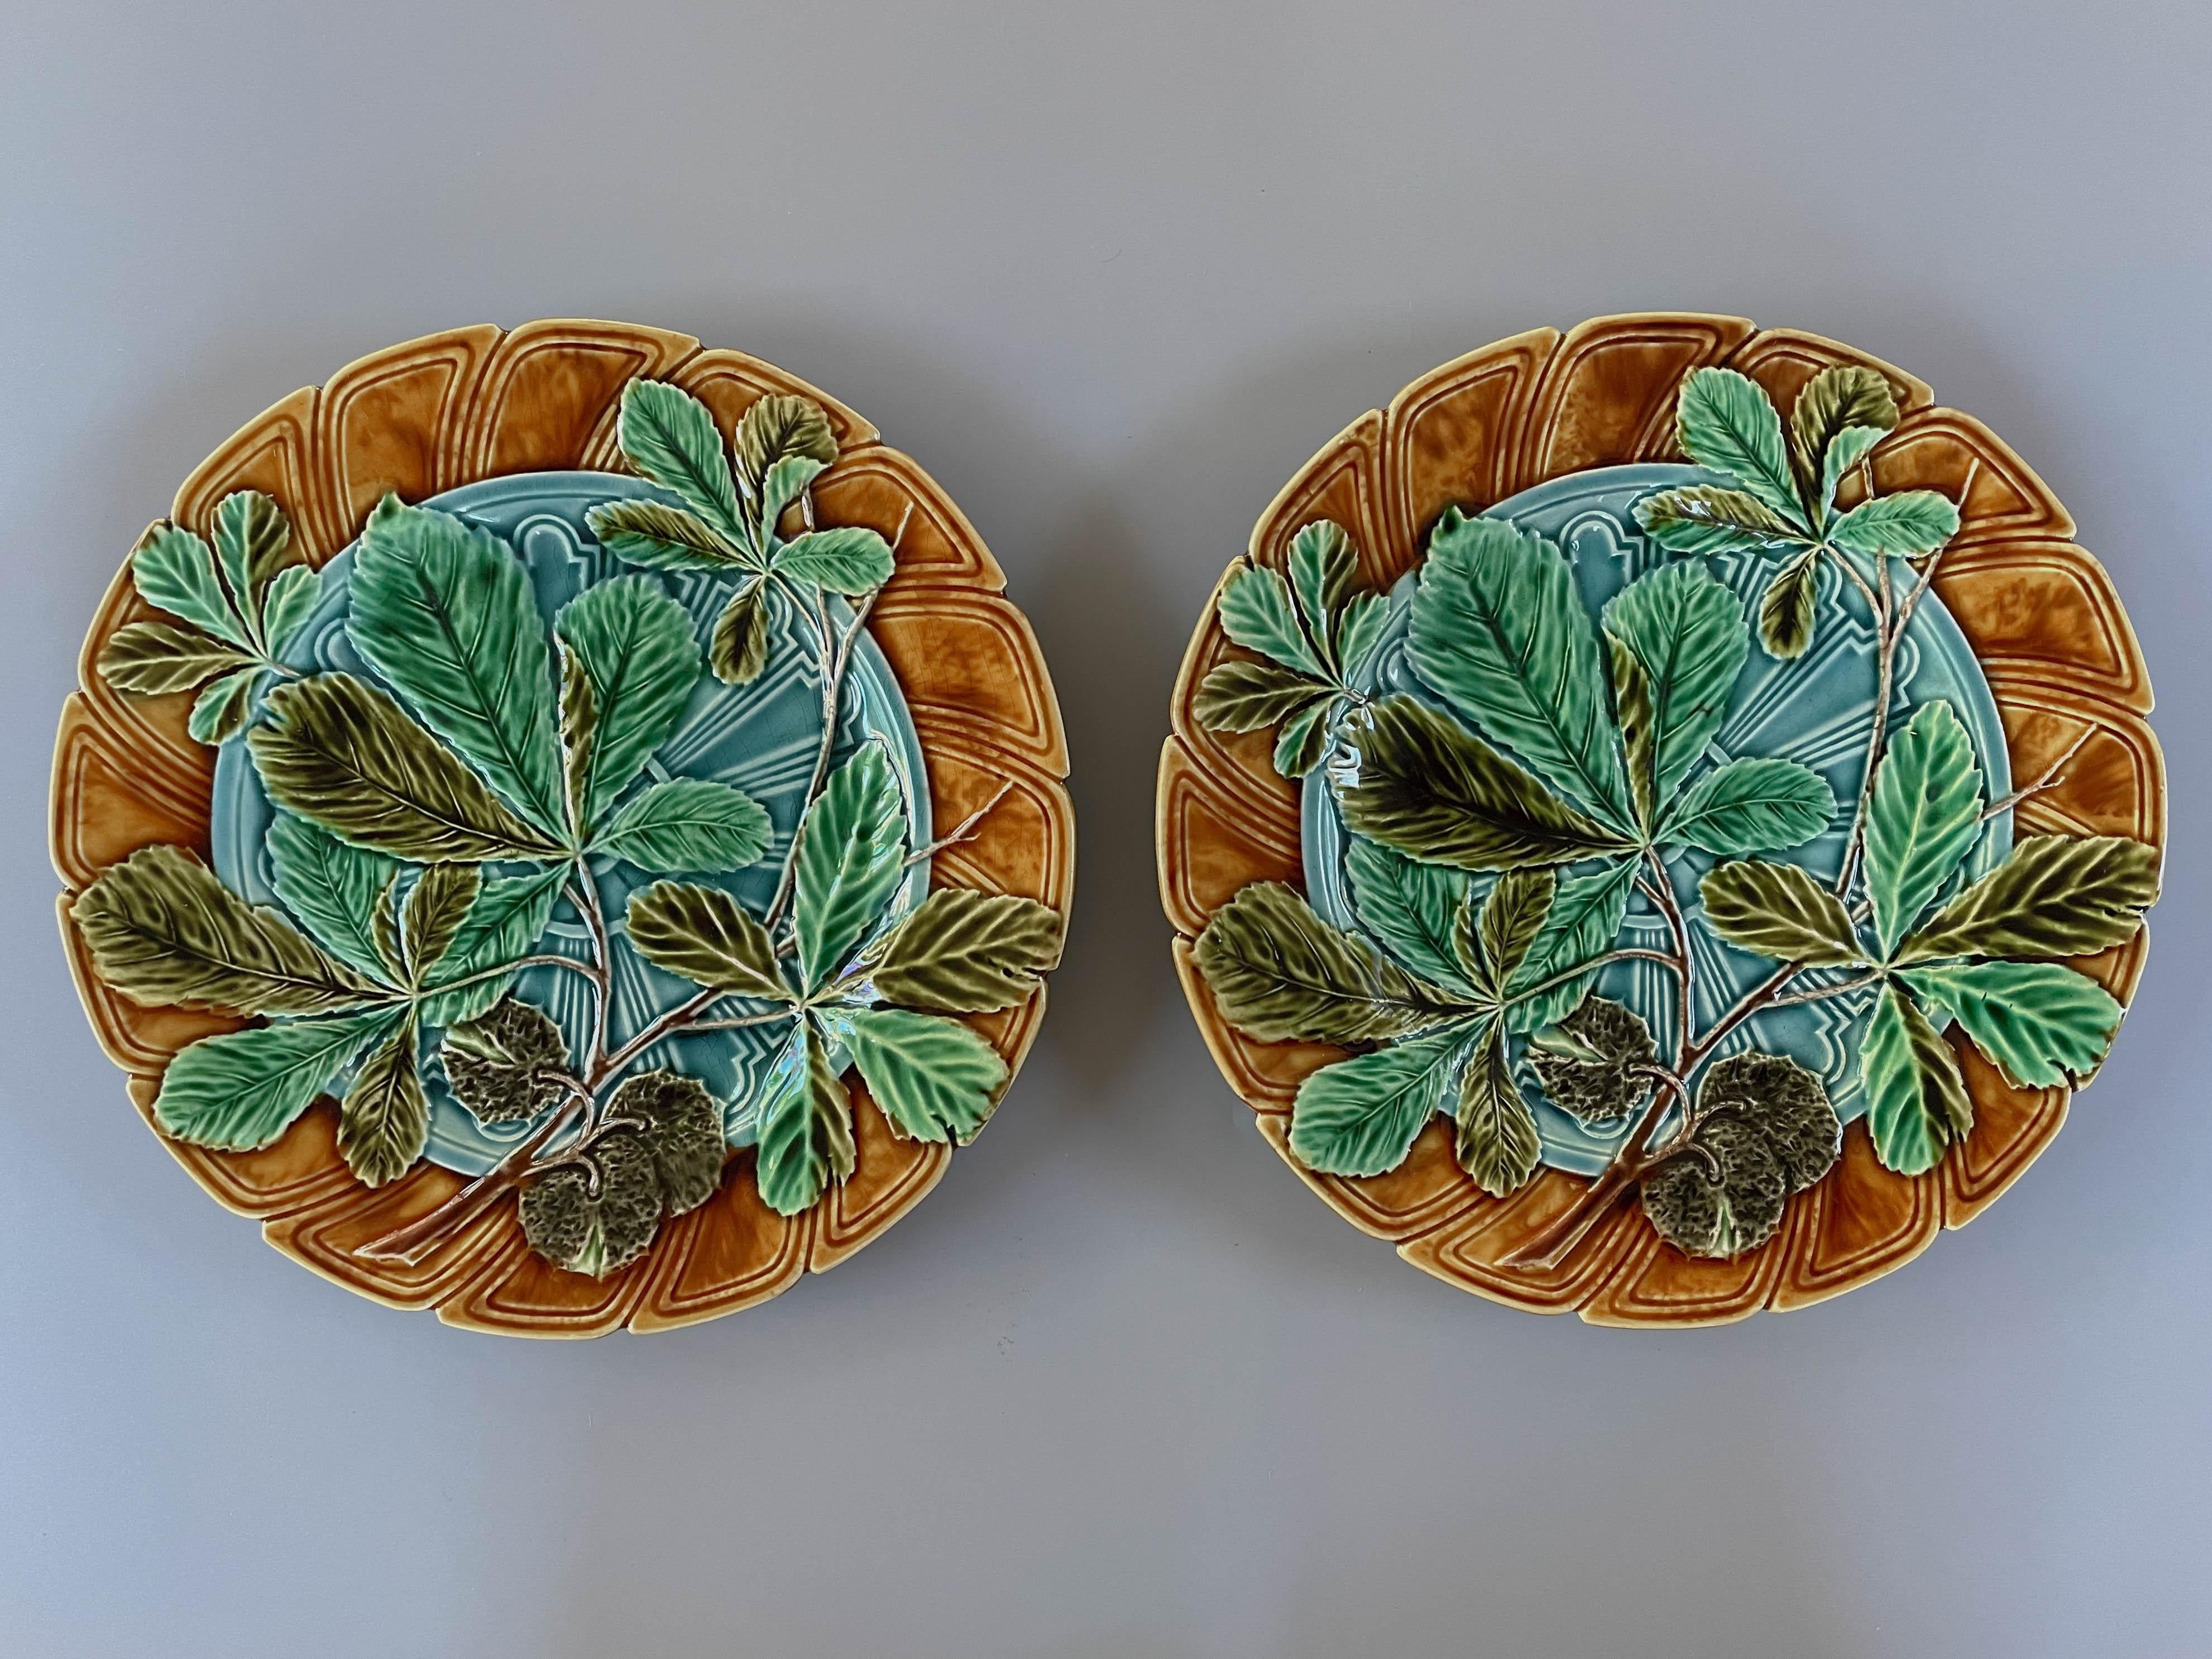 Paire d'assiettes en céramique émaillée de Sarreguemines (France) du XIXe siècle, à motif de feuilles de marronnier dans les tons de vert, sur fond bleu turquoise et bord ocre. Glaçure bleue au verso. Marqué au verso : Majolica Sarreguemines. Vers